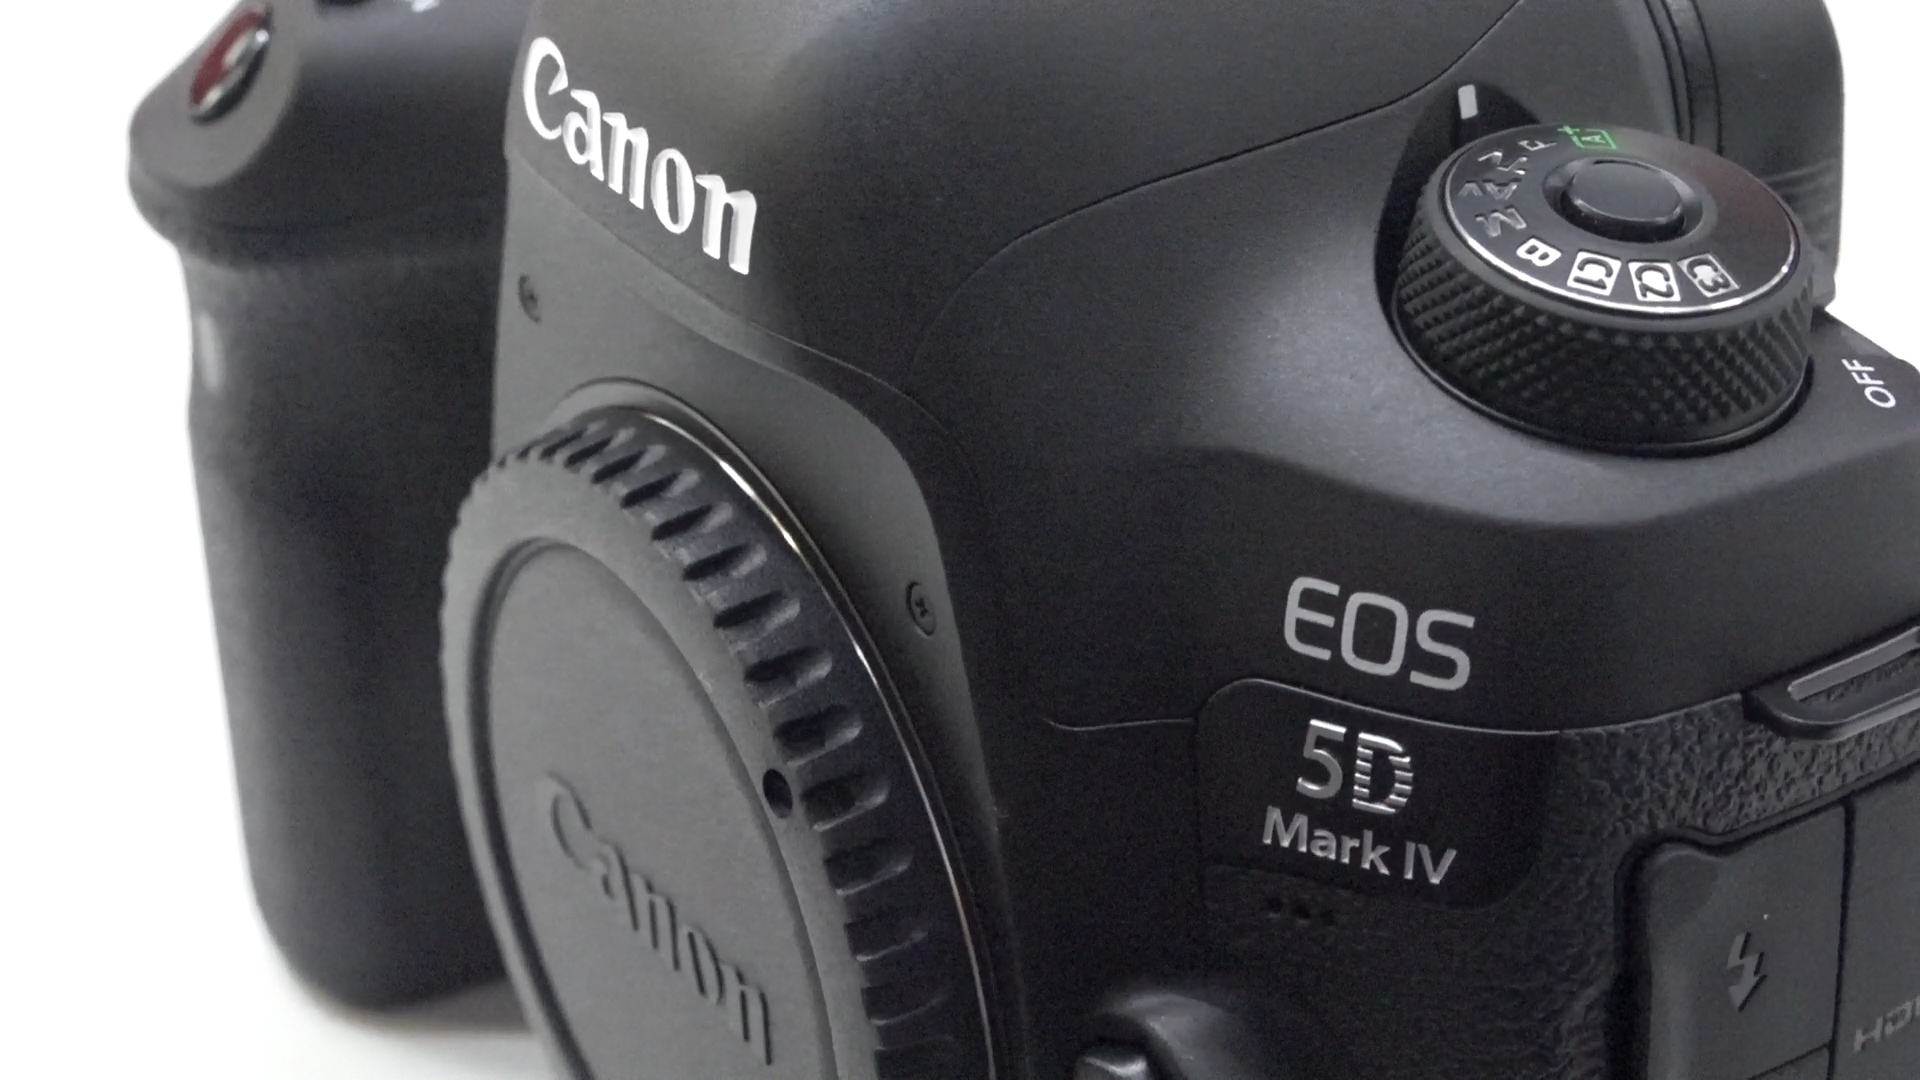 Canon 5DMark IV ön inceleme videosu 'Yeni nesil kamera'